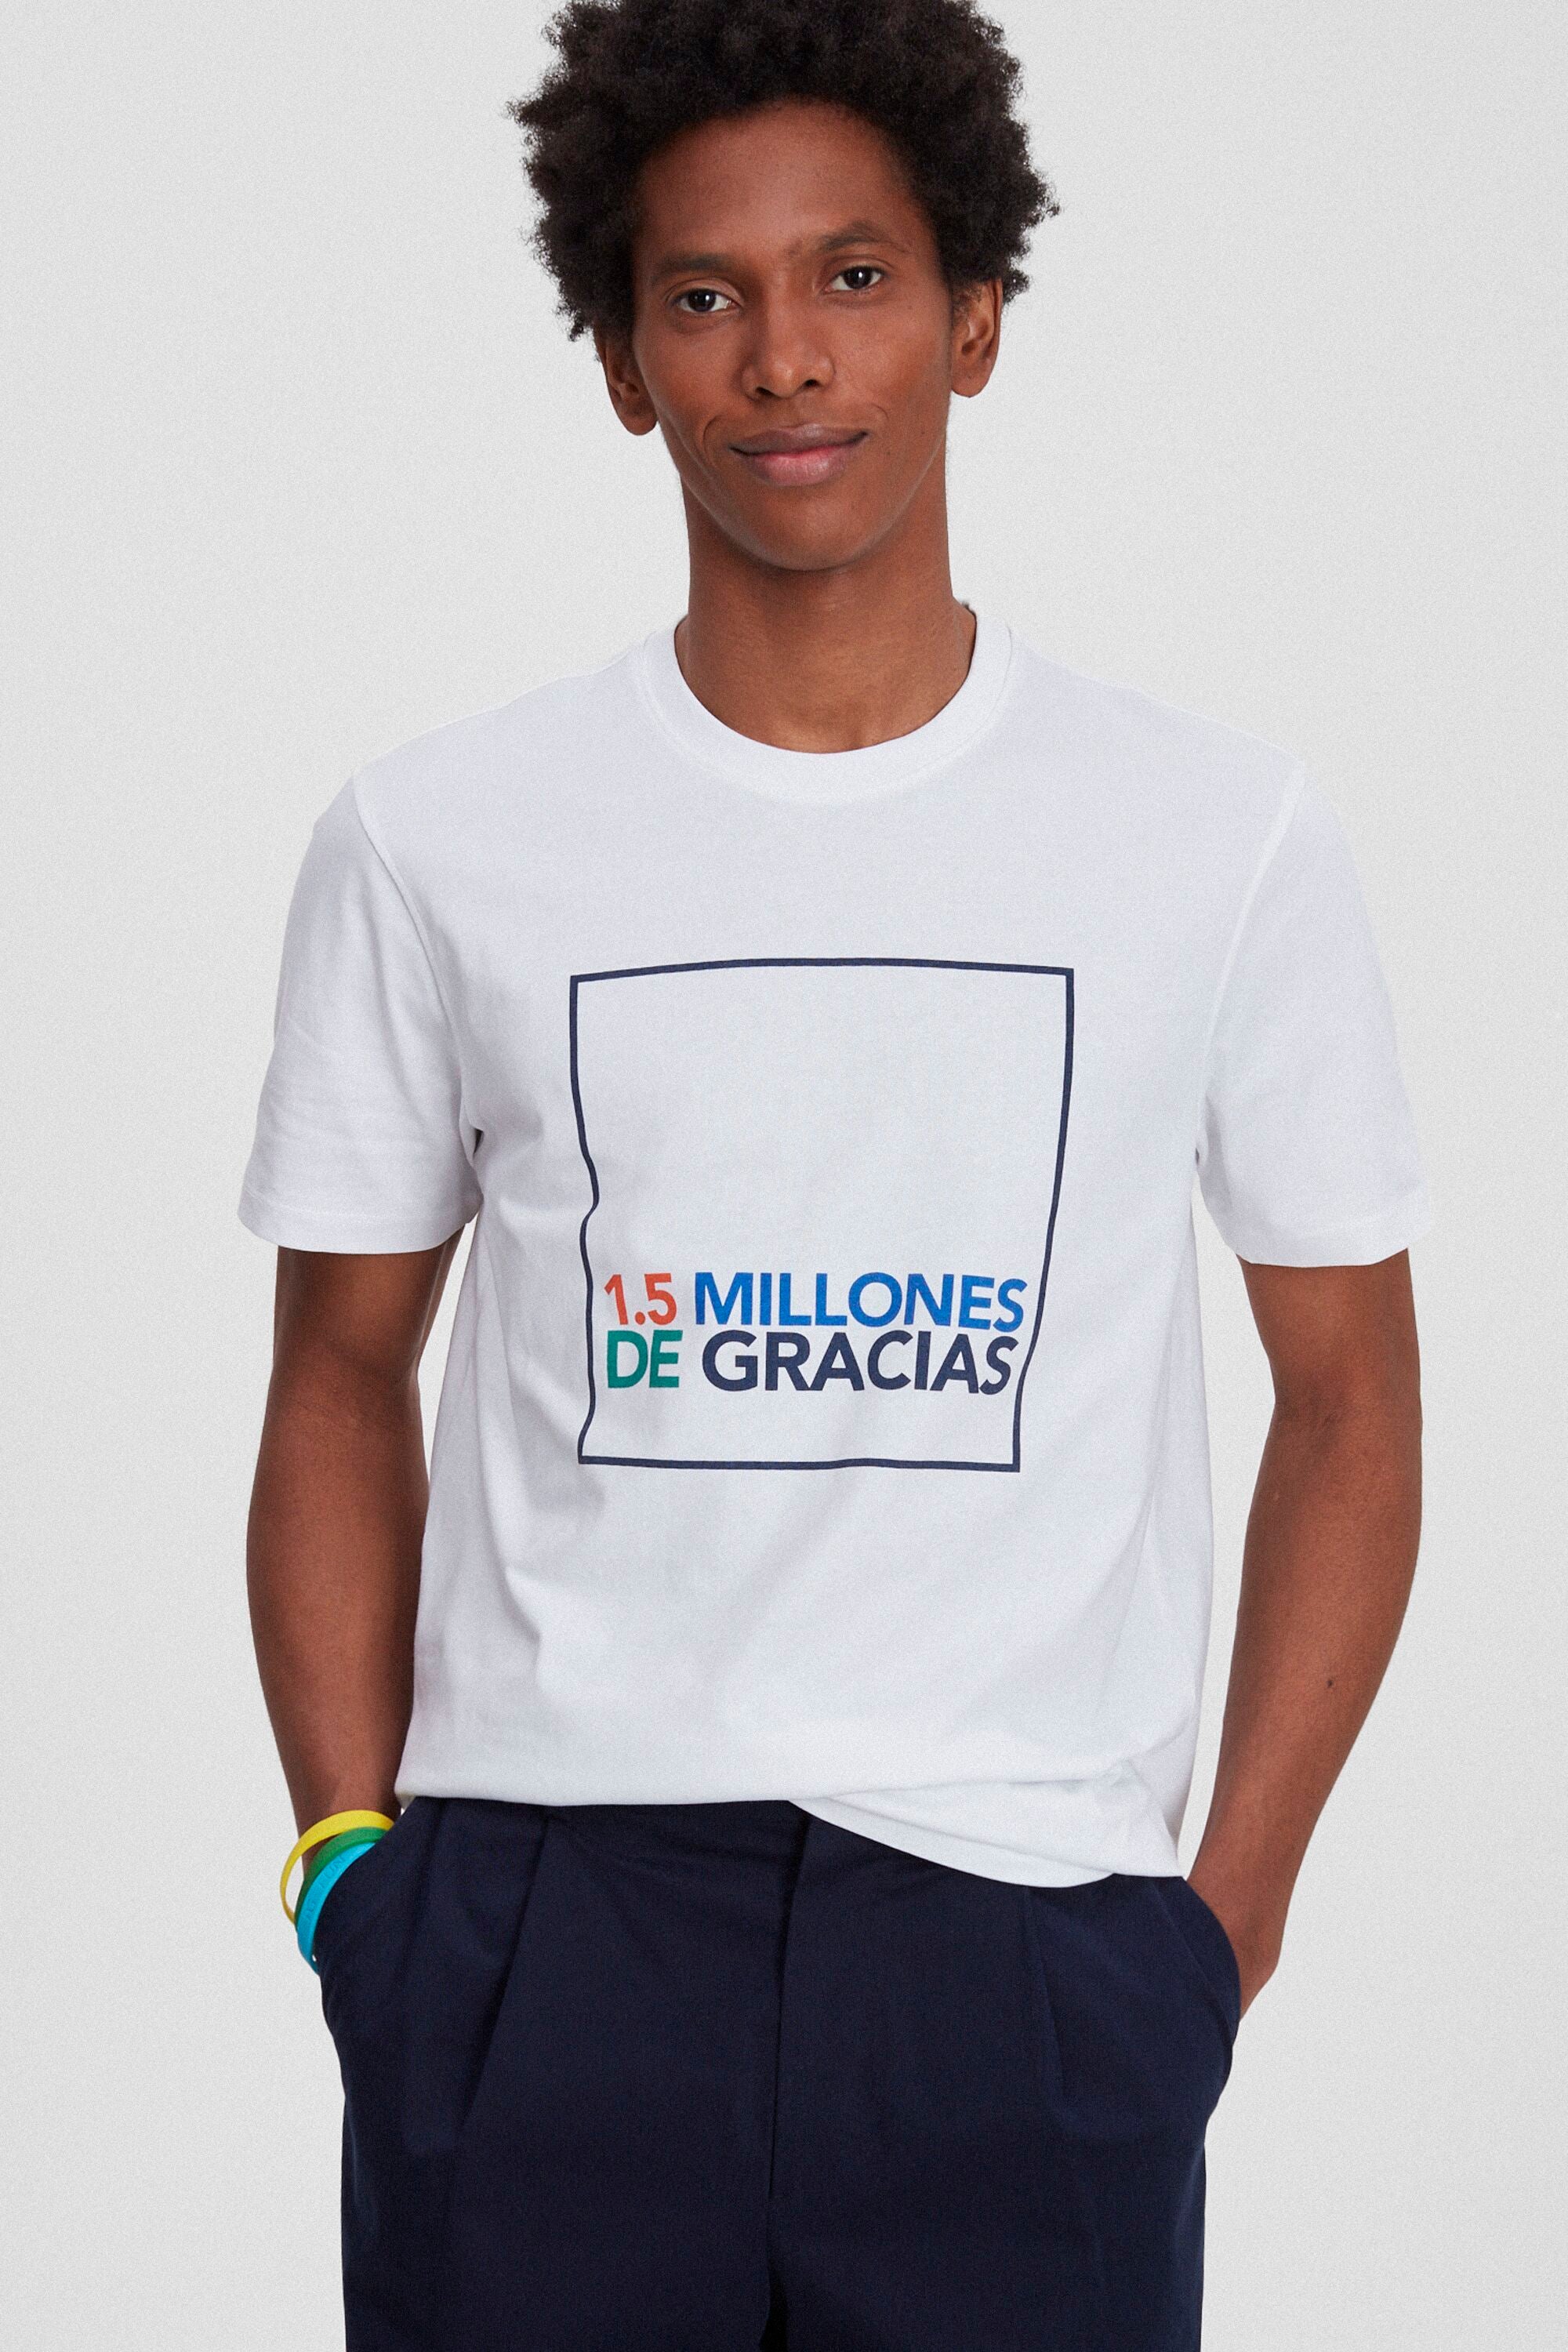 MODA DONNA Camicie & T-shirt Asimmetrico Nero M sconto 87% Purificación García T-shirt 